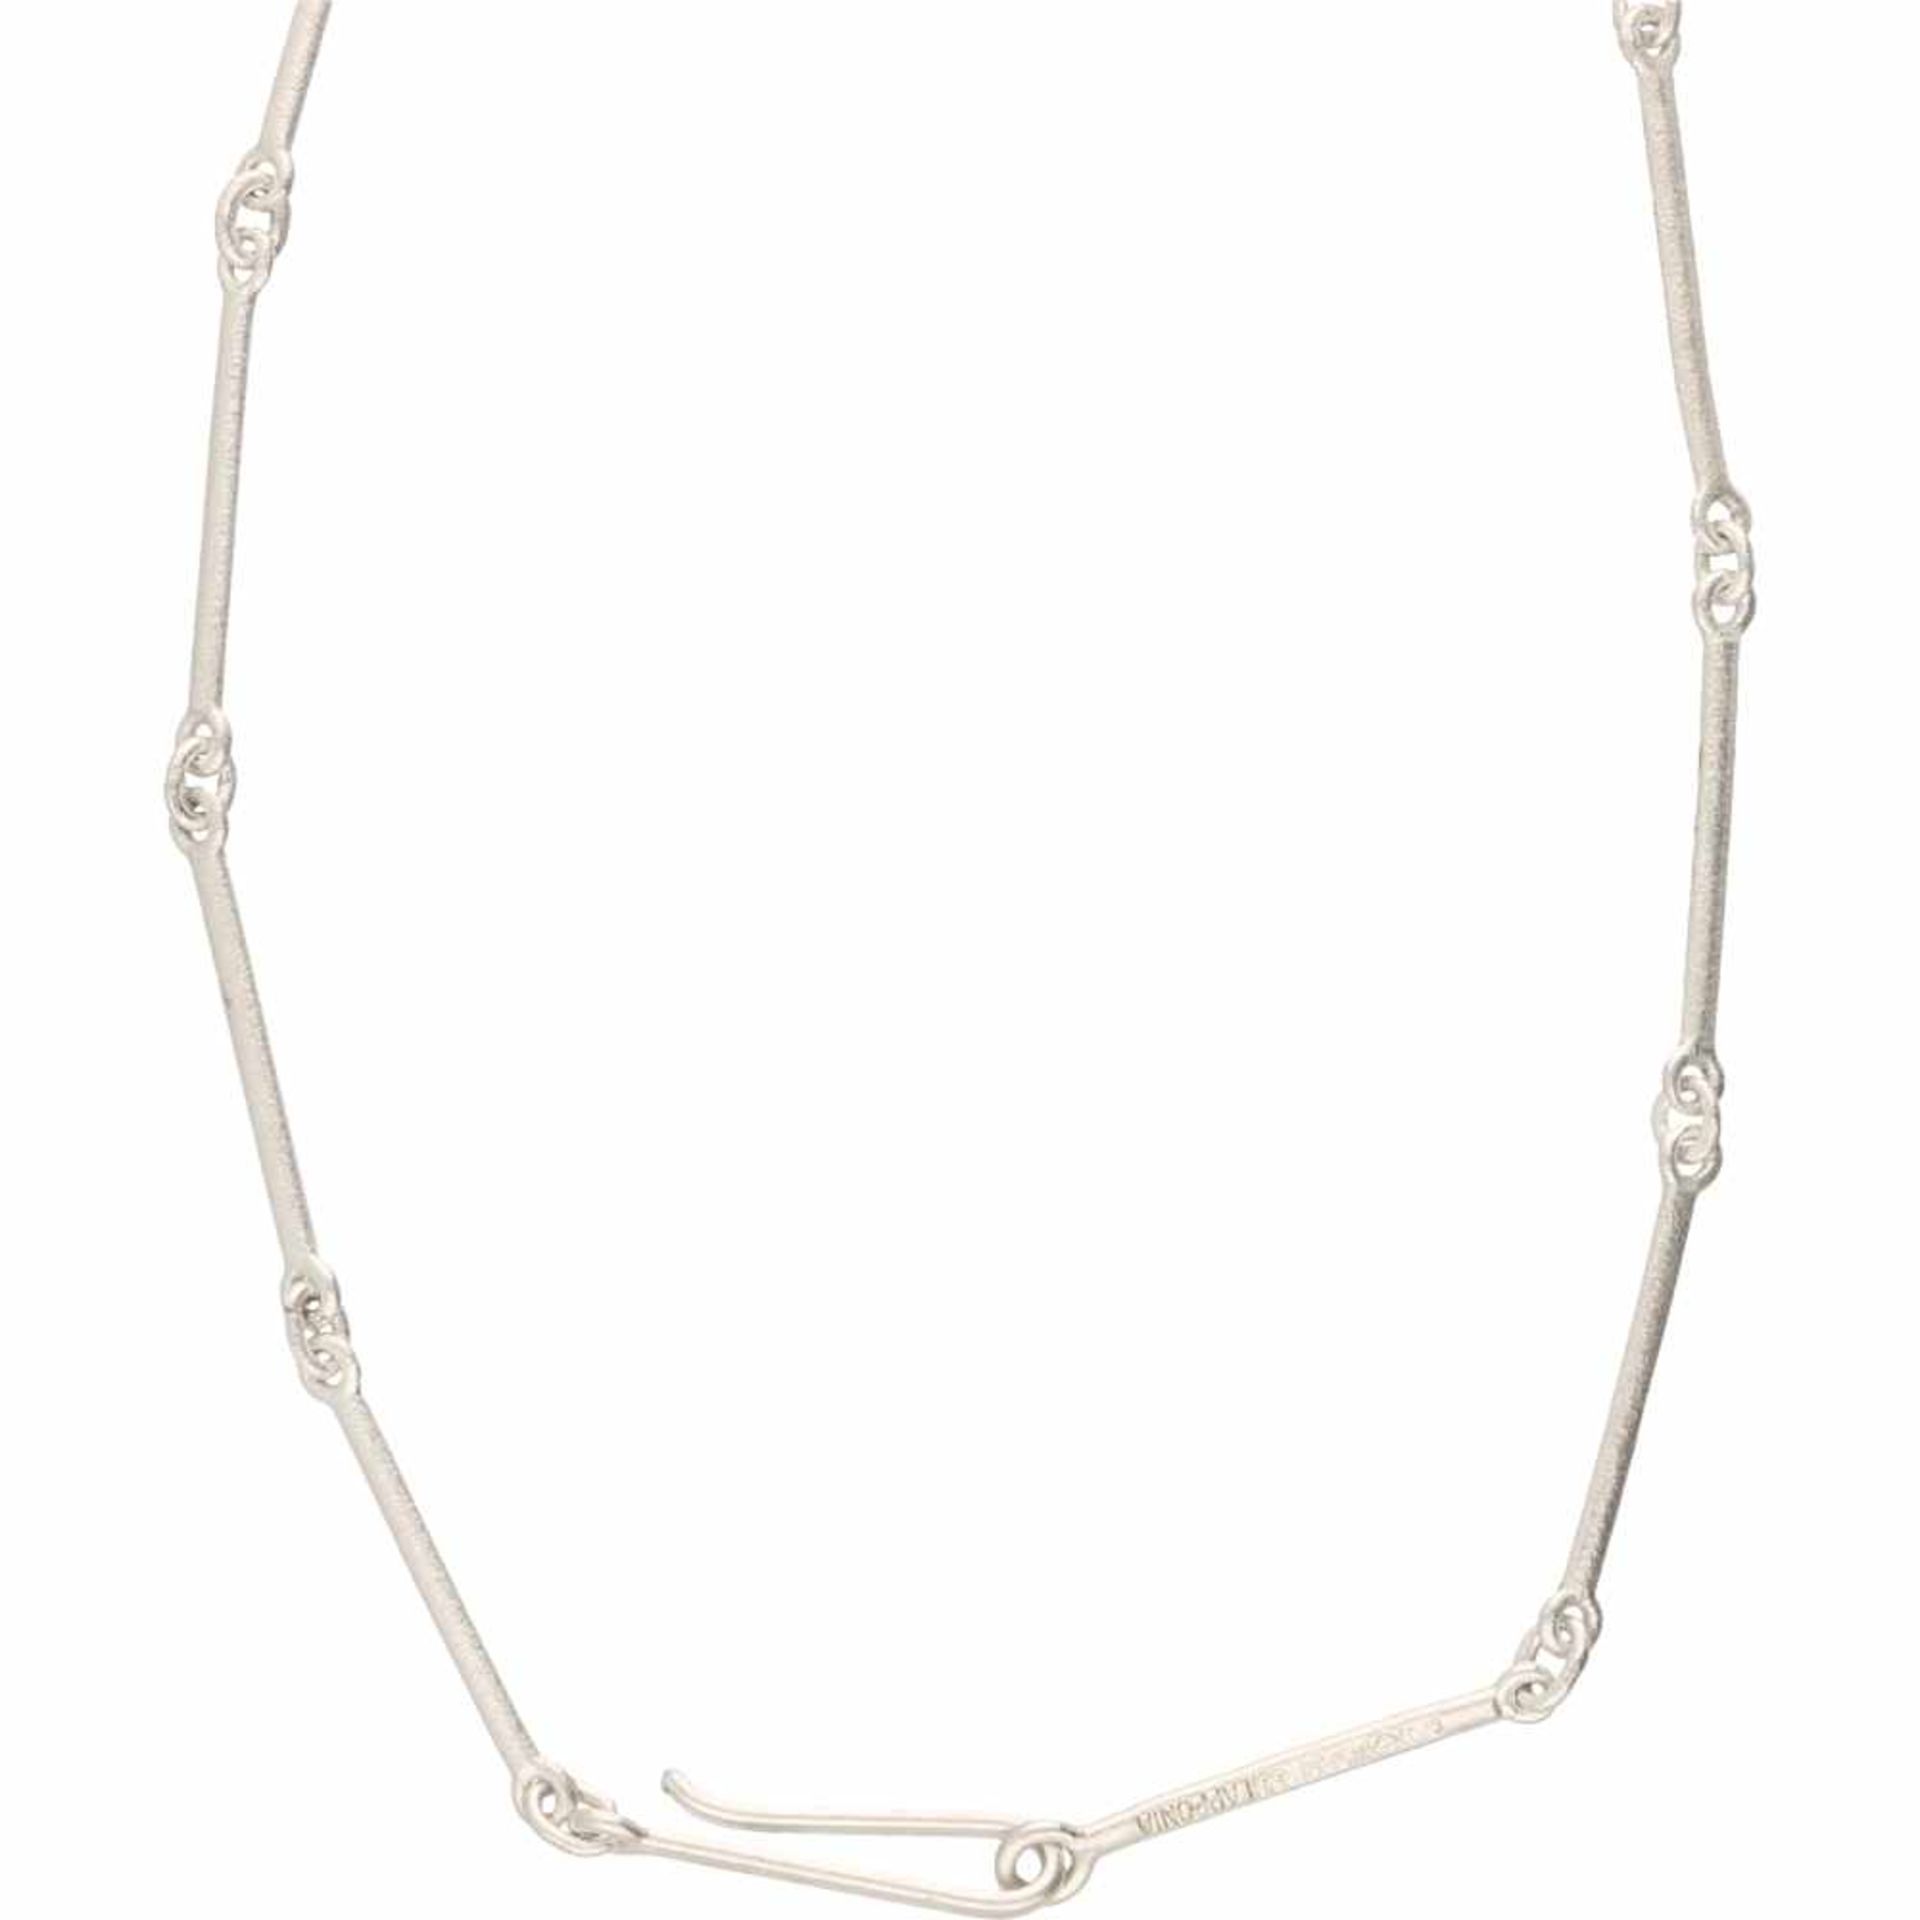 Lapponia Memphis necklace silver - 925/1000. - Bild 3 aus 3